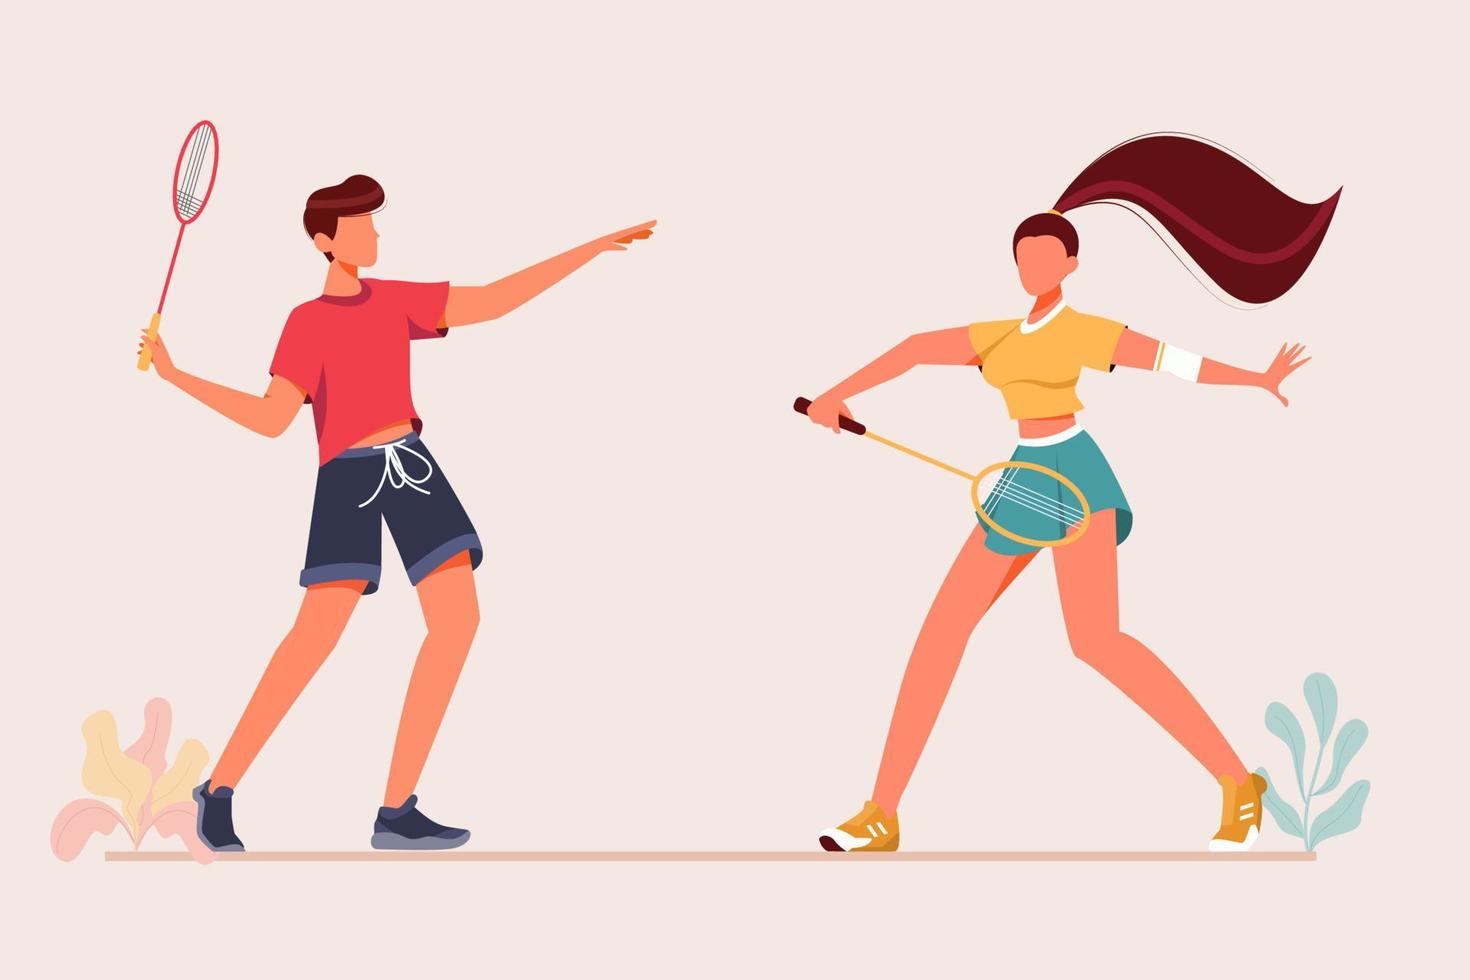 der Mann, der Badminton mit Frau spielt, lokalisierte das flache Design des Hintergrundes und spielt Badminton mit der modernen Art der Freundvektorillustration vektor